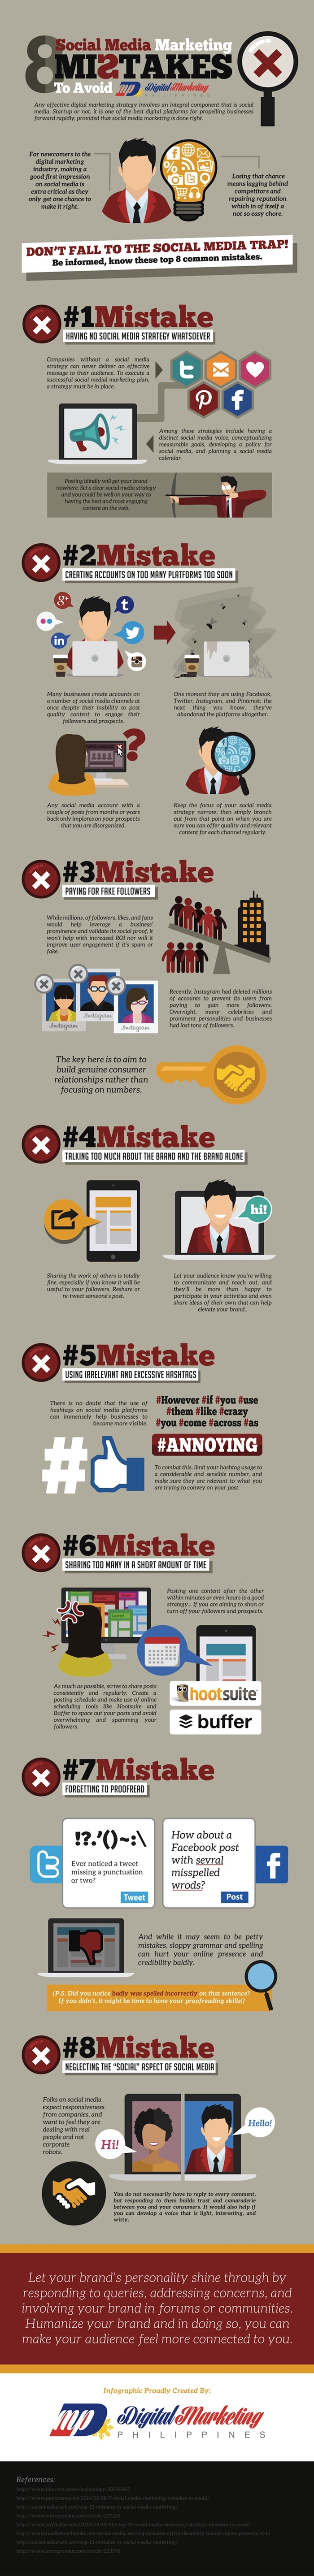 8-Social-Media-Marketing-Mistakes-to-Avoid-700